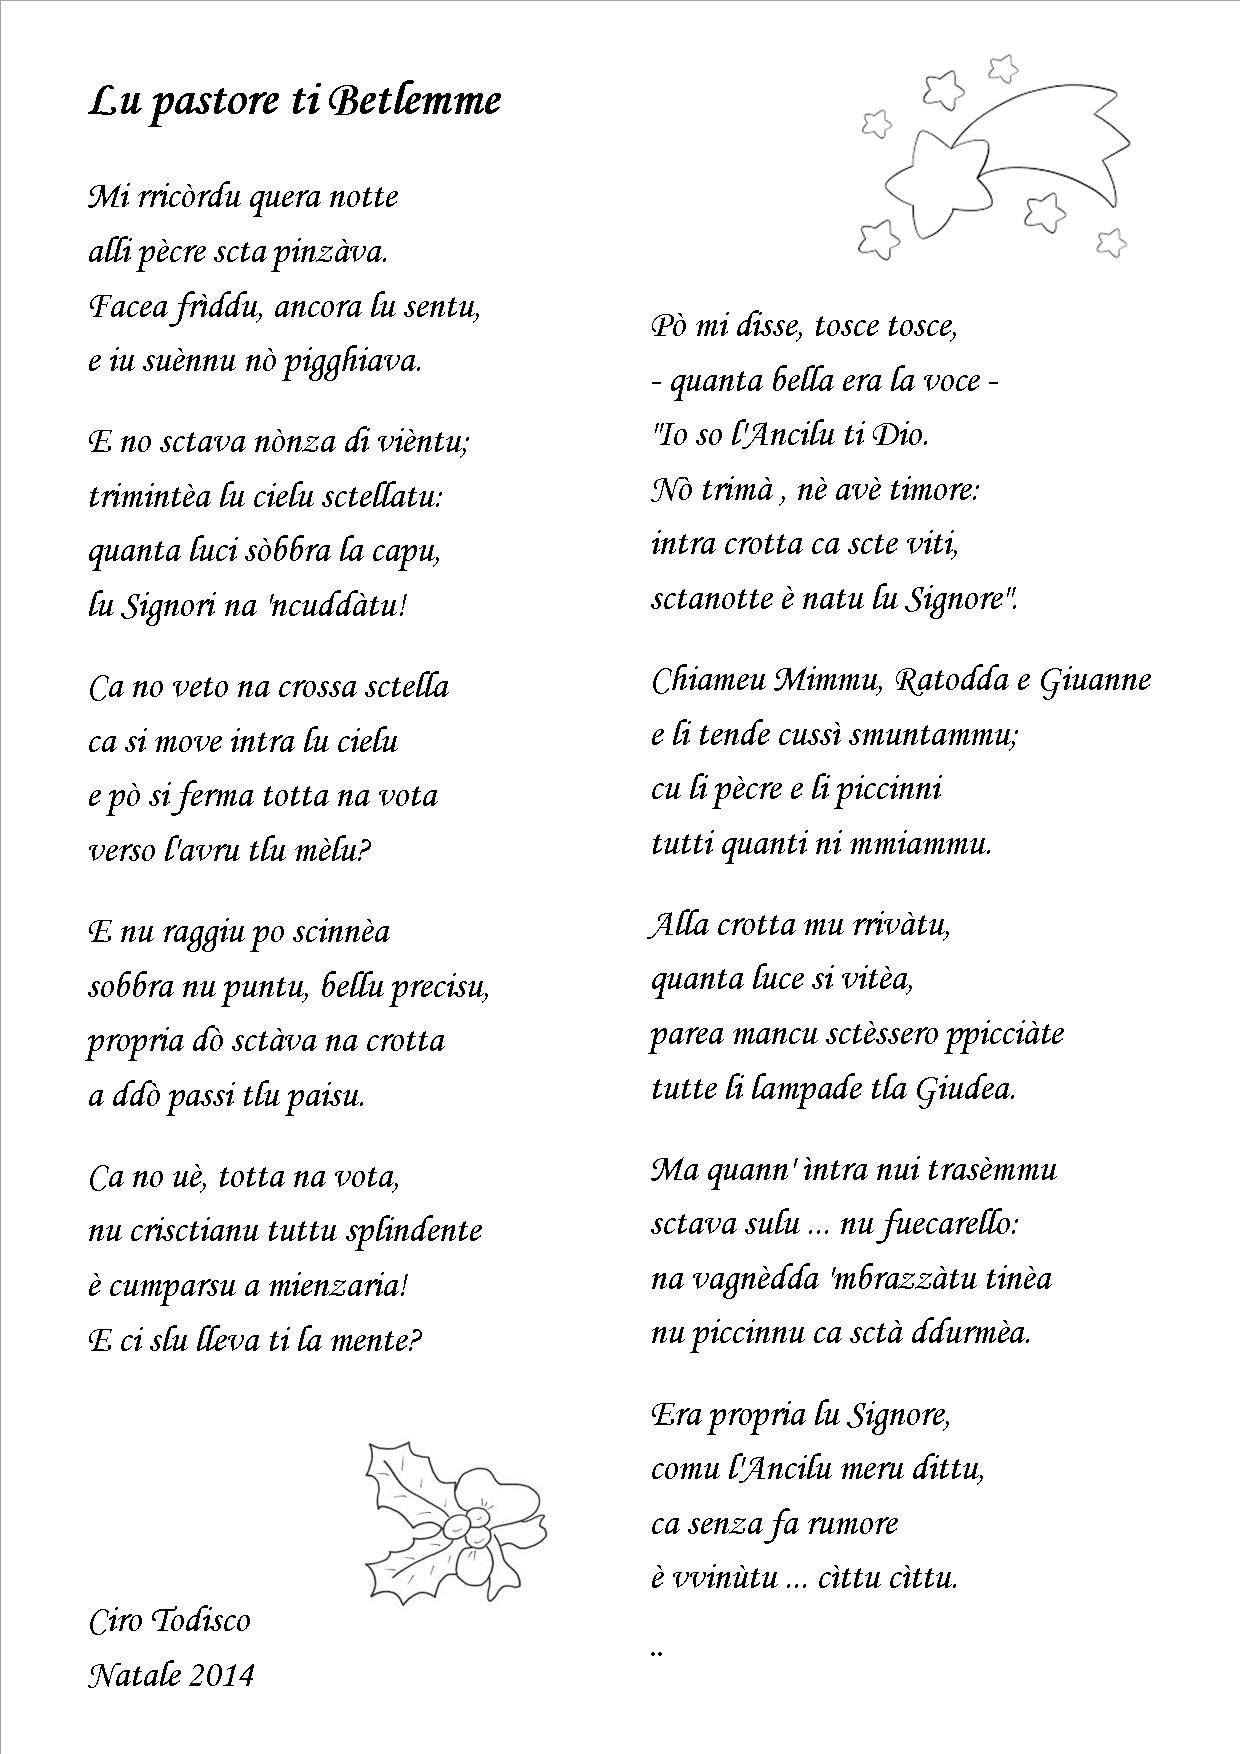 Poesie Di Natale In Dialetto.Antologia Di Poesie Dialettali Per Natale Grottagliesita Blog